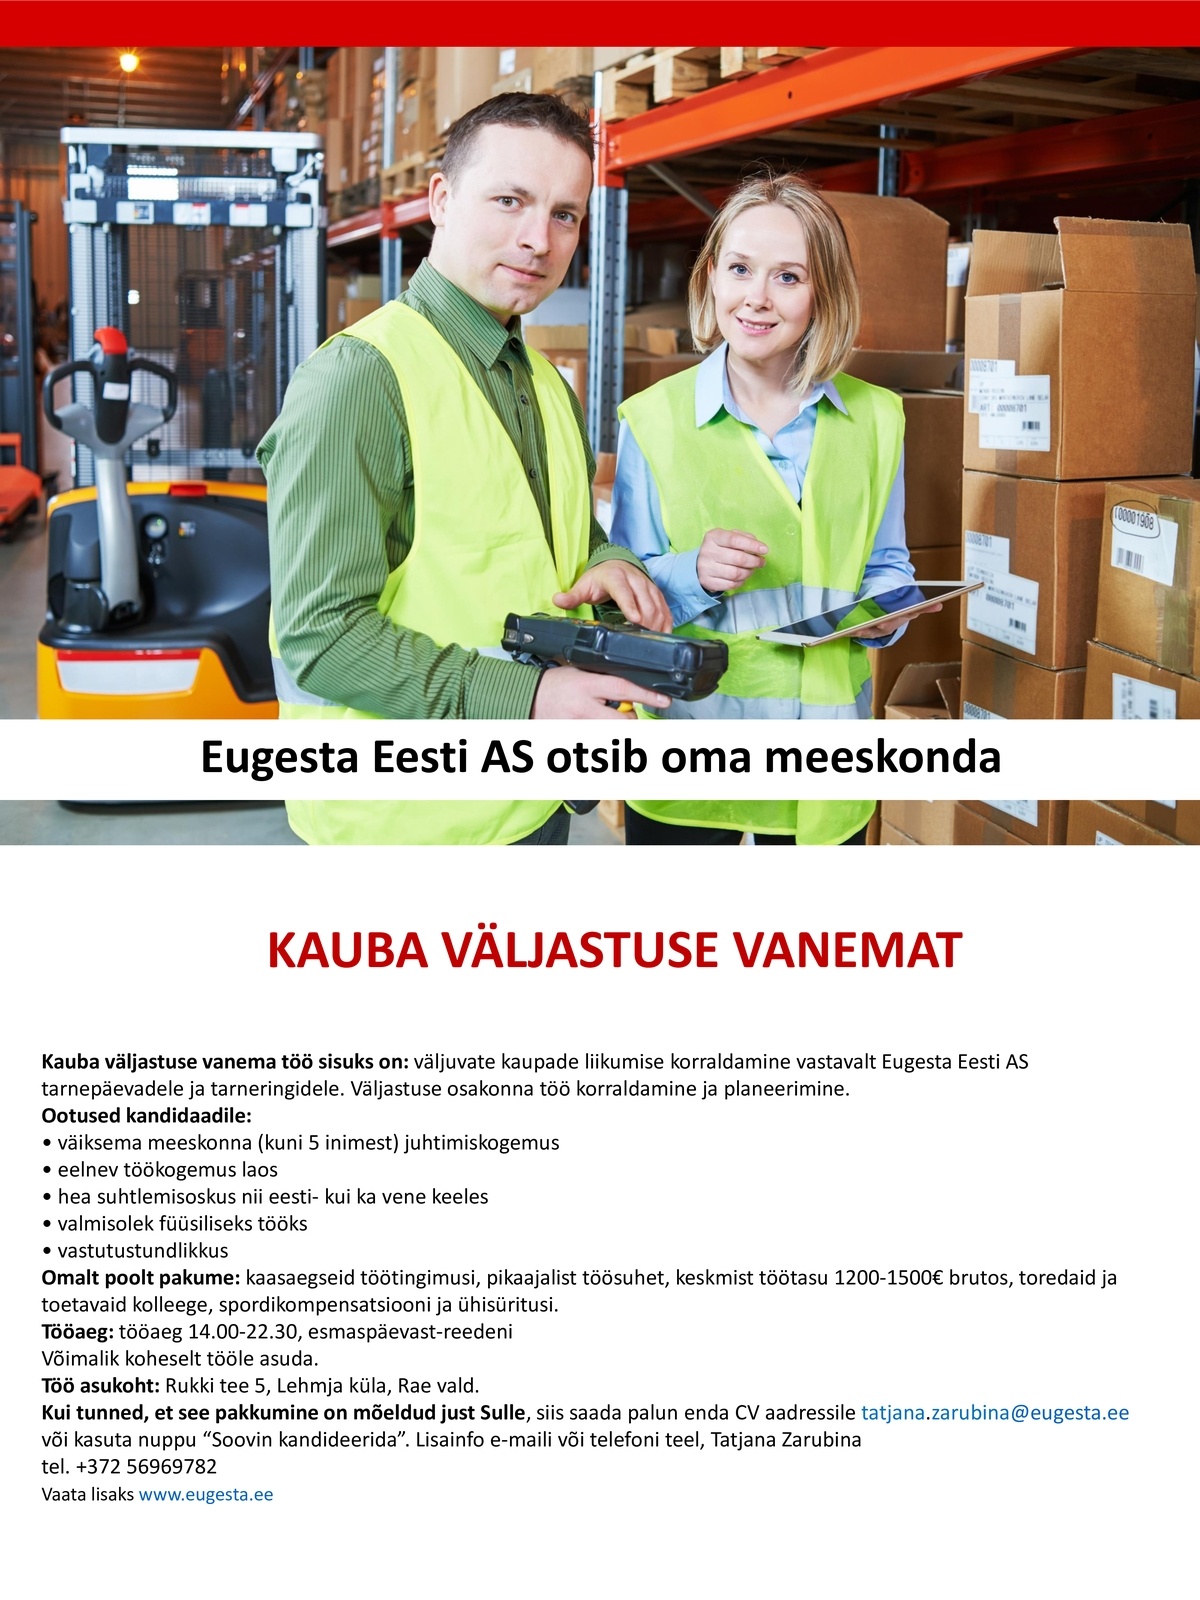 Eugesta Eesti AS Kauba väljastuse vanem